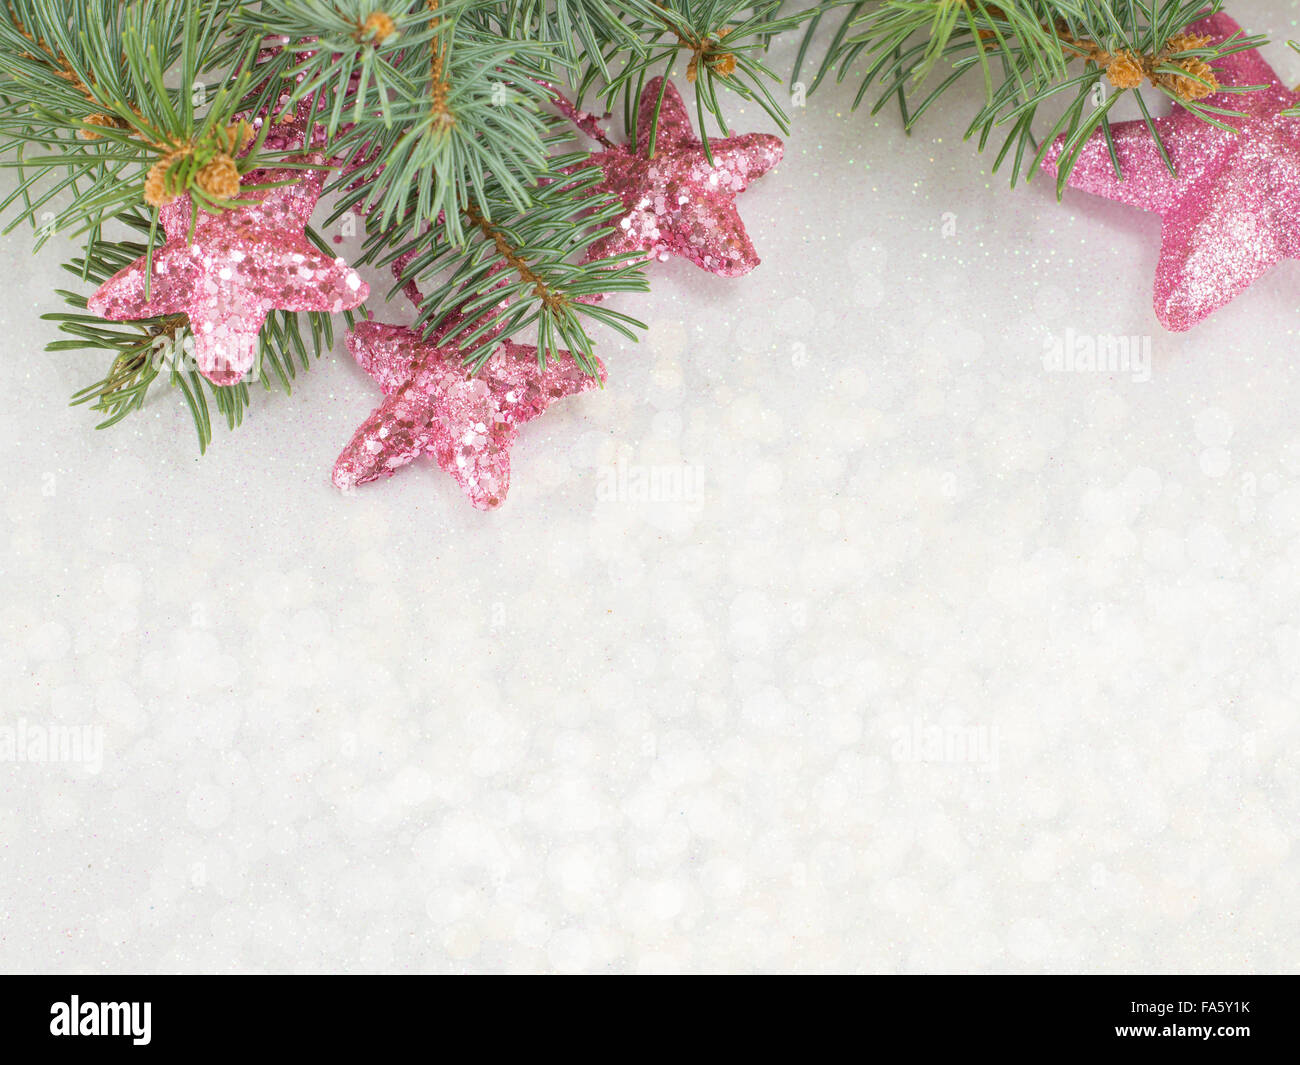 Christmas background brillante de color rosa con adornos y abeto Foto de stock